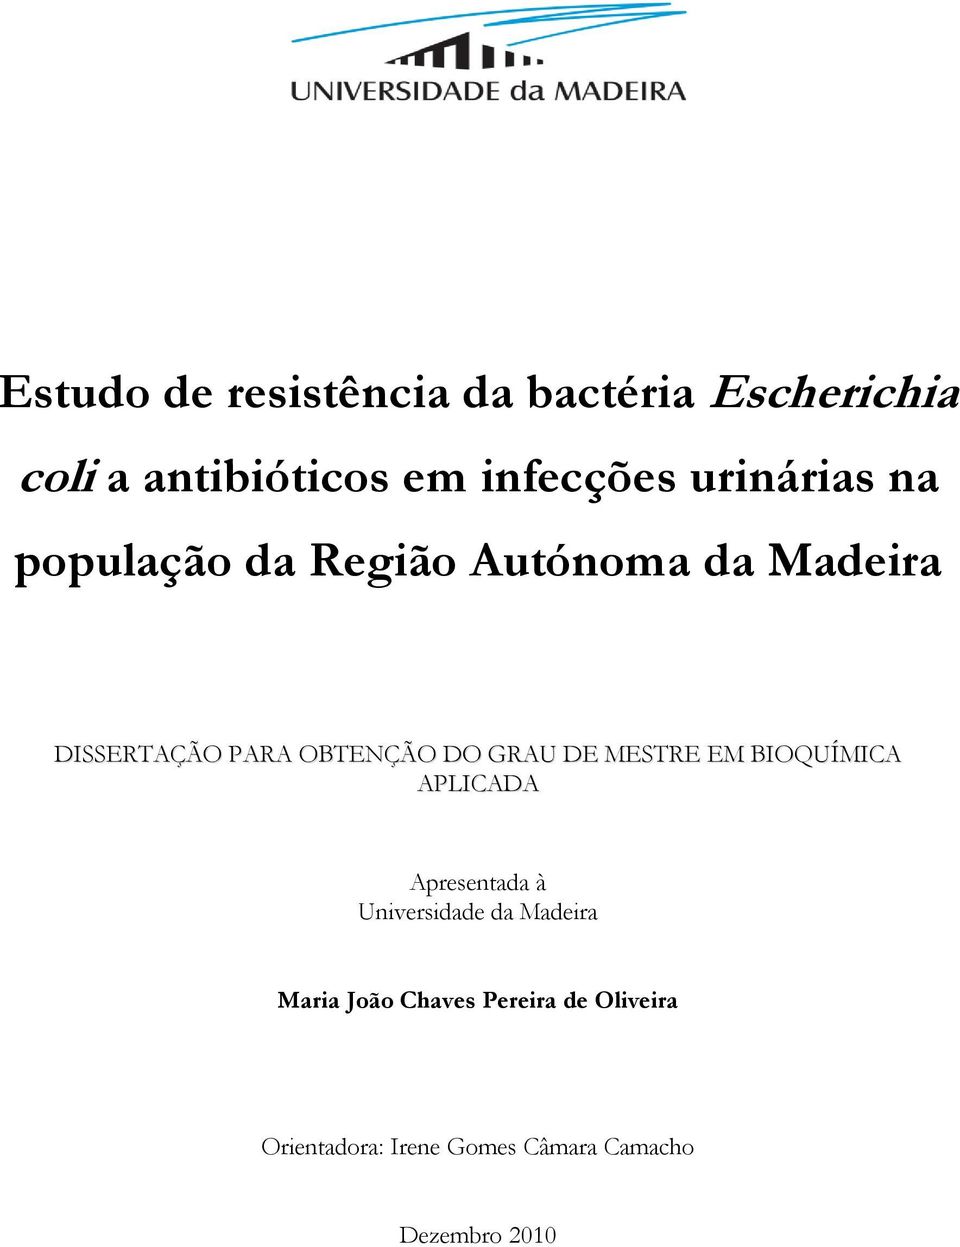 GRAU DE MESTRE EM BIOQUÍMICA APLICADA Apresentada à Universidade da Madeira Maria